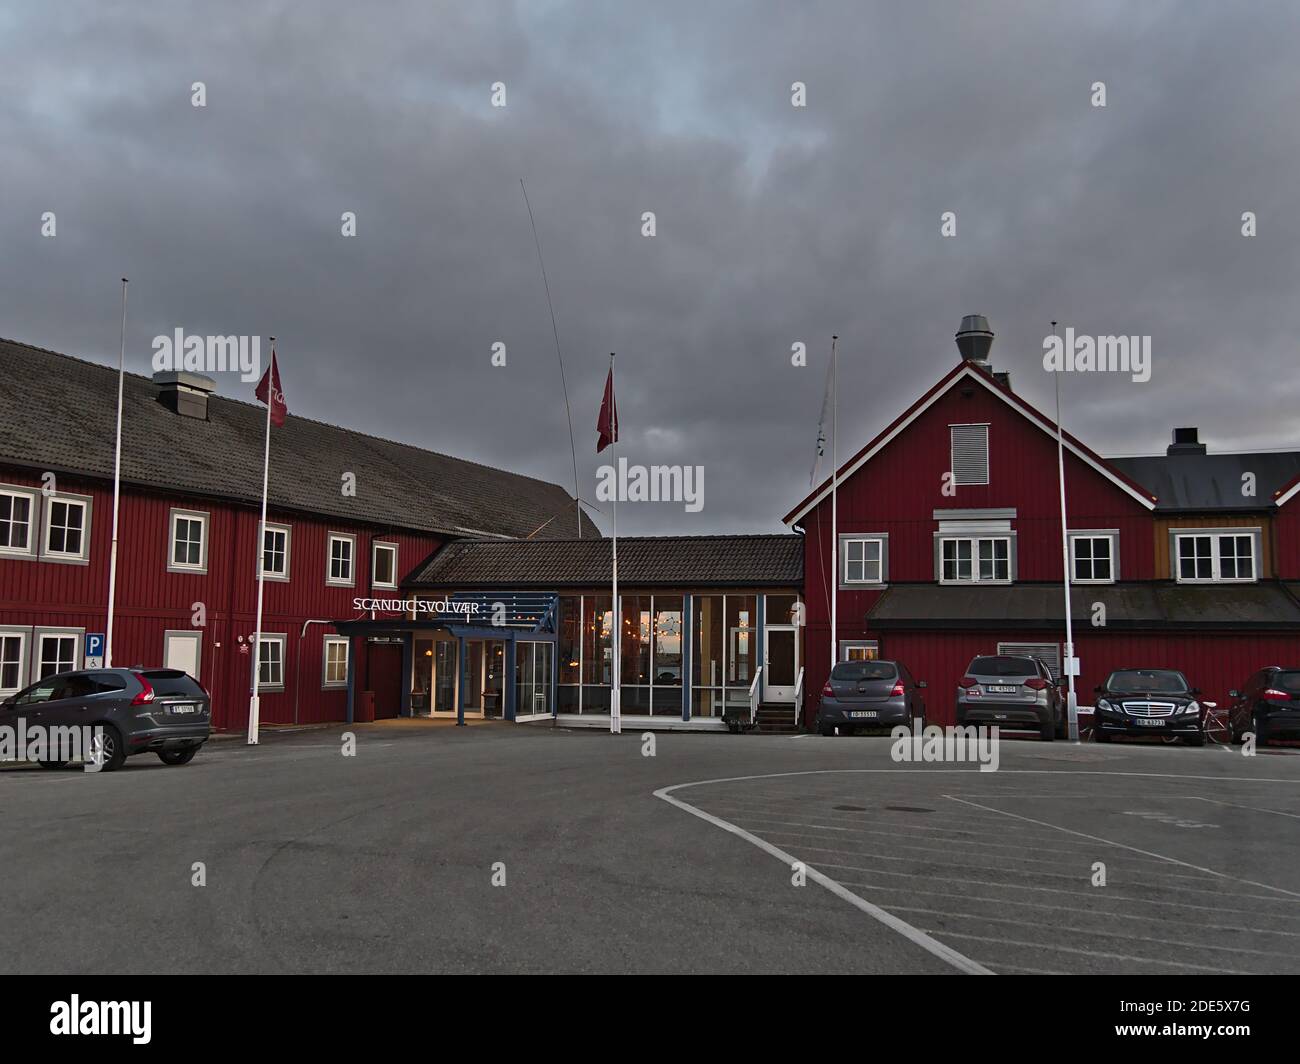 Svolvær, Austvågøya, Lofoten, Norvegia - 08-26-2020: Vista frontale dell'ingresso principale dell'hotel Scandic nel centro di Svolvaer, situato in un edificio in legno rosso. Foto Stock